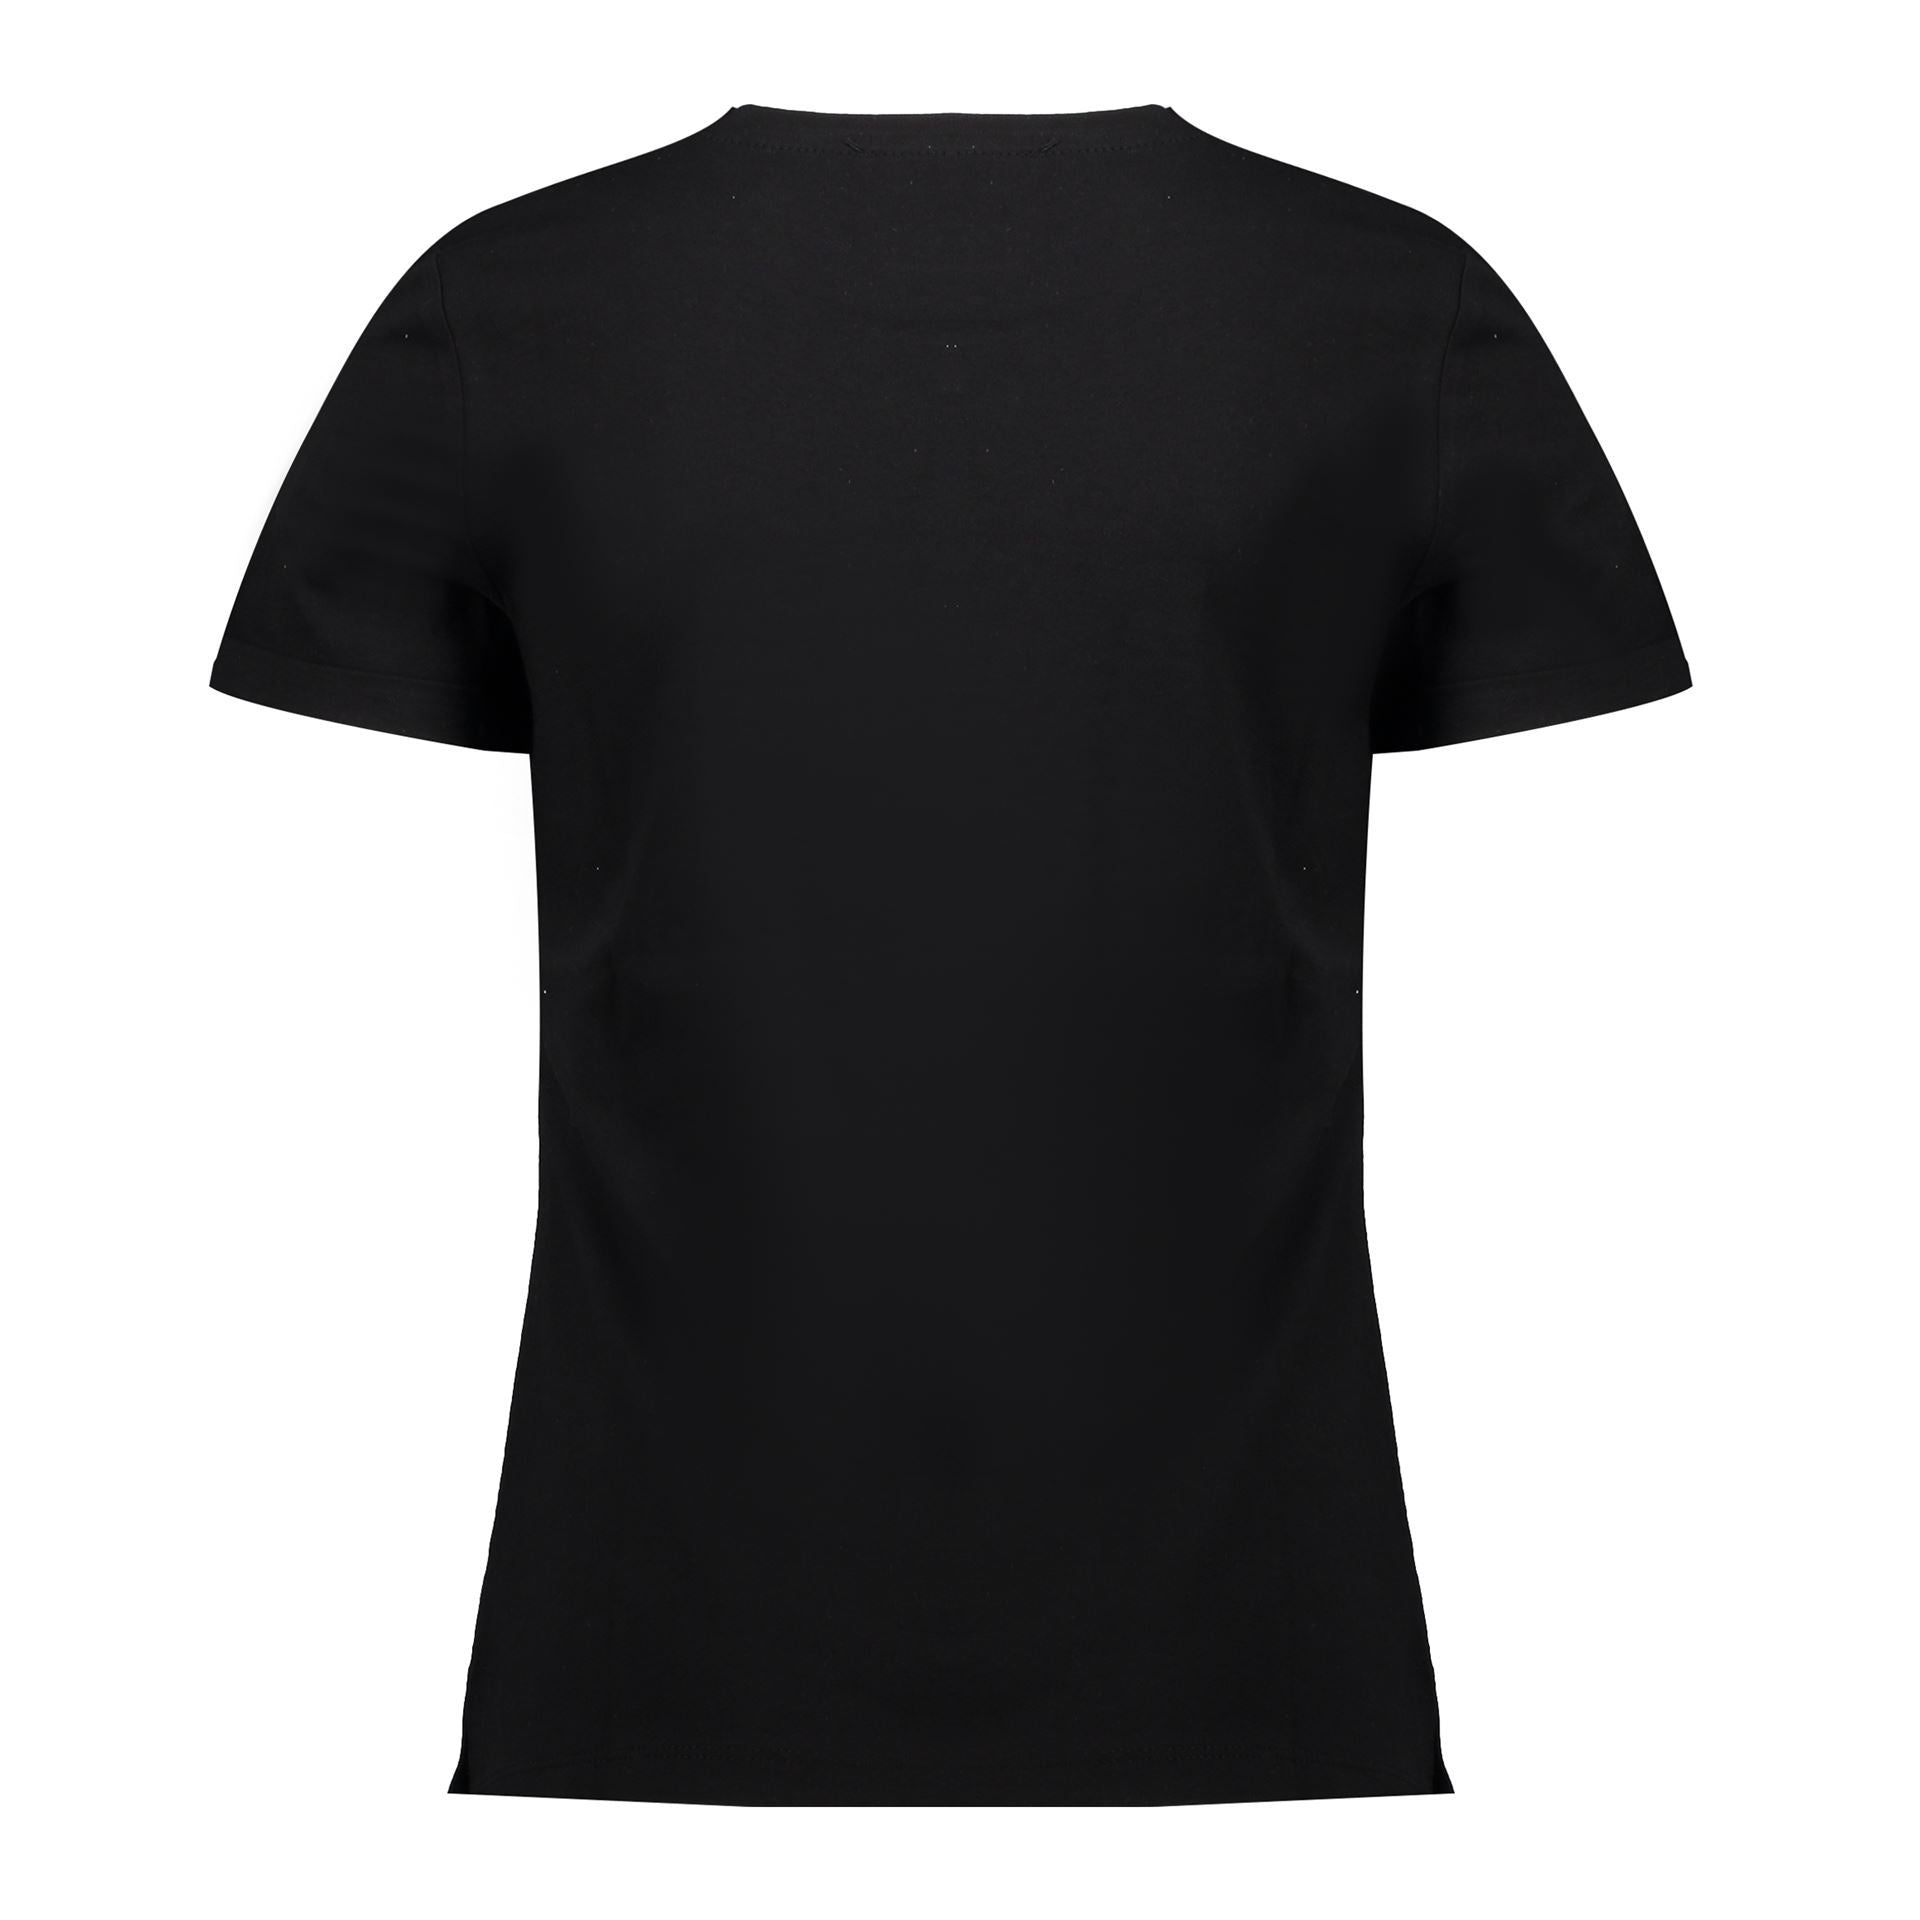 Meisjes T-Shirt S/S With Front Print van Geisha in de kleur Black in maat 176.